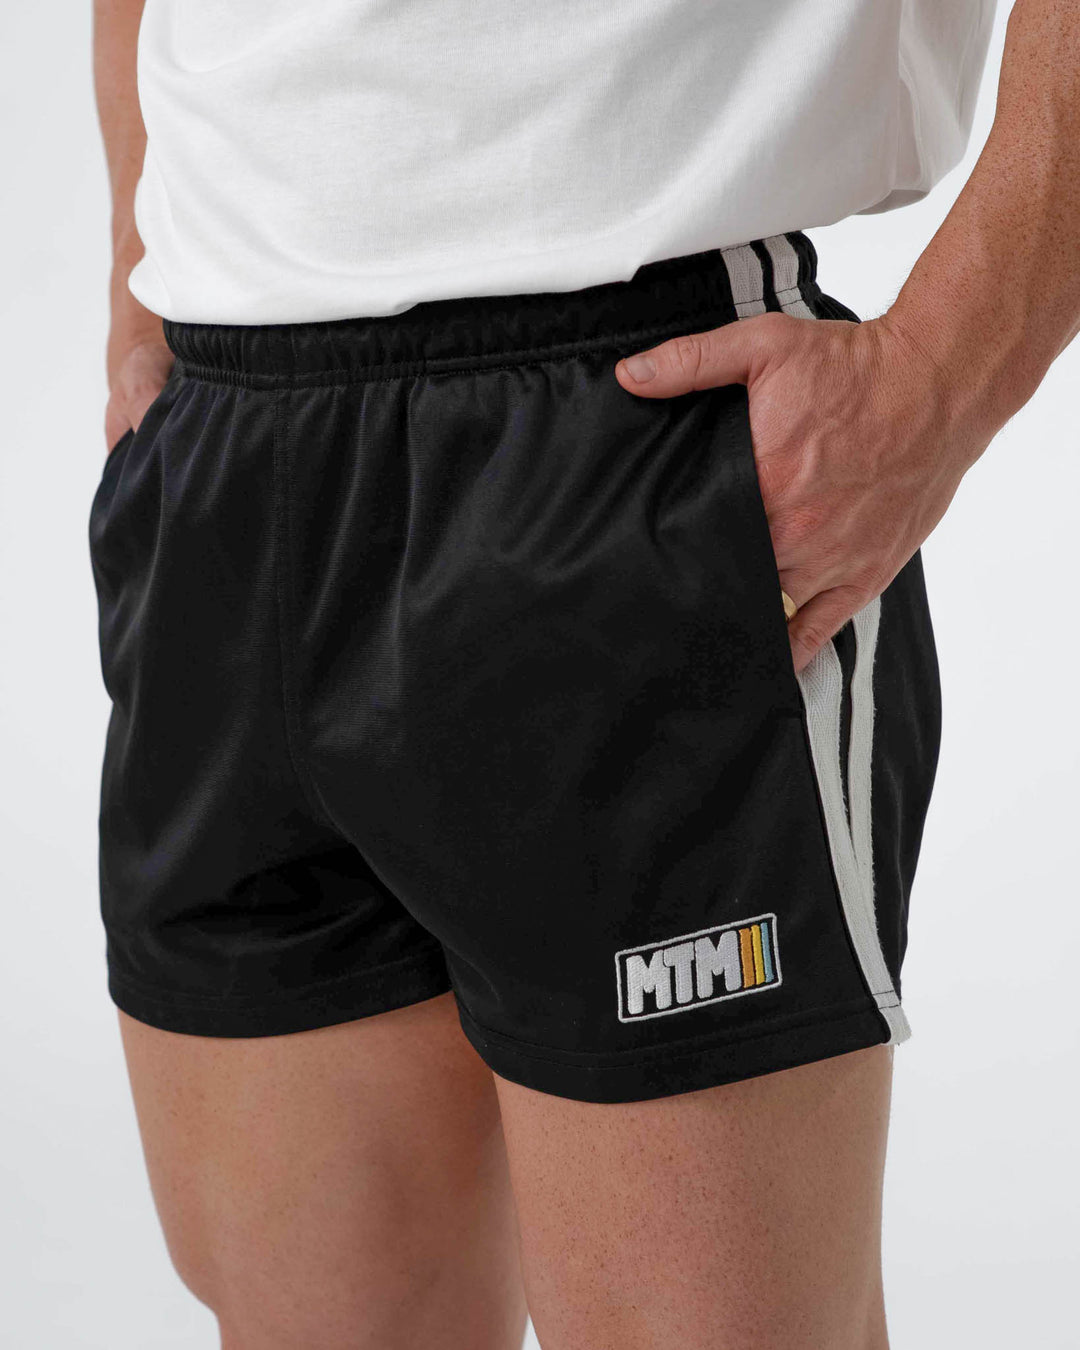 Men's Shorts, Gym Shorts for Men